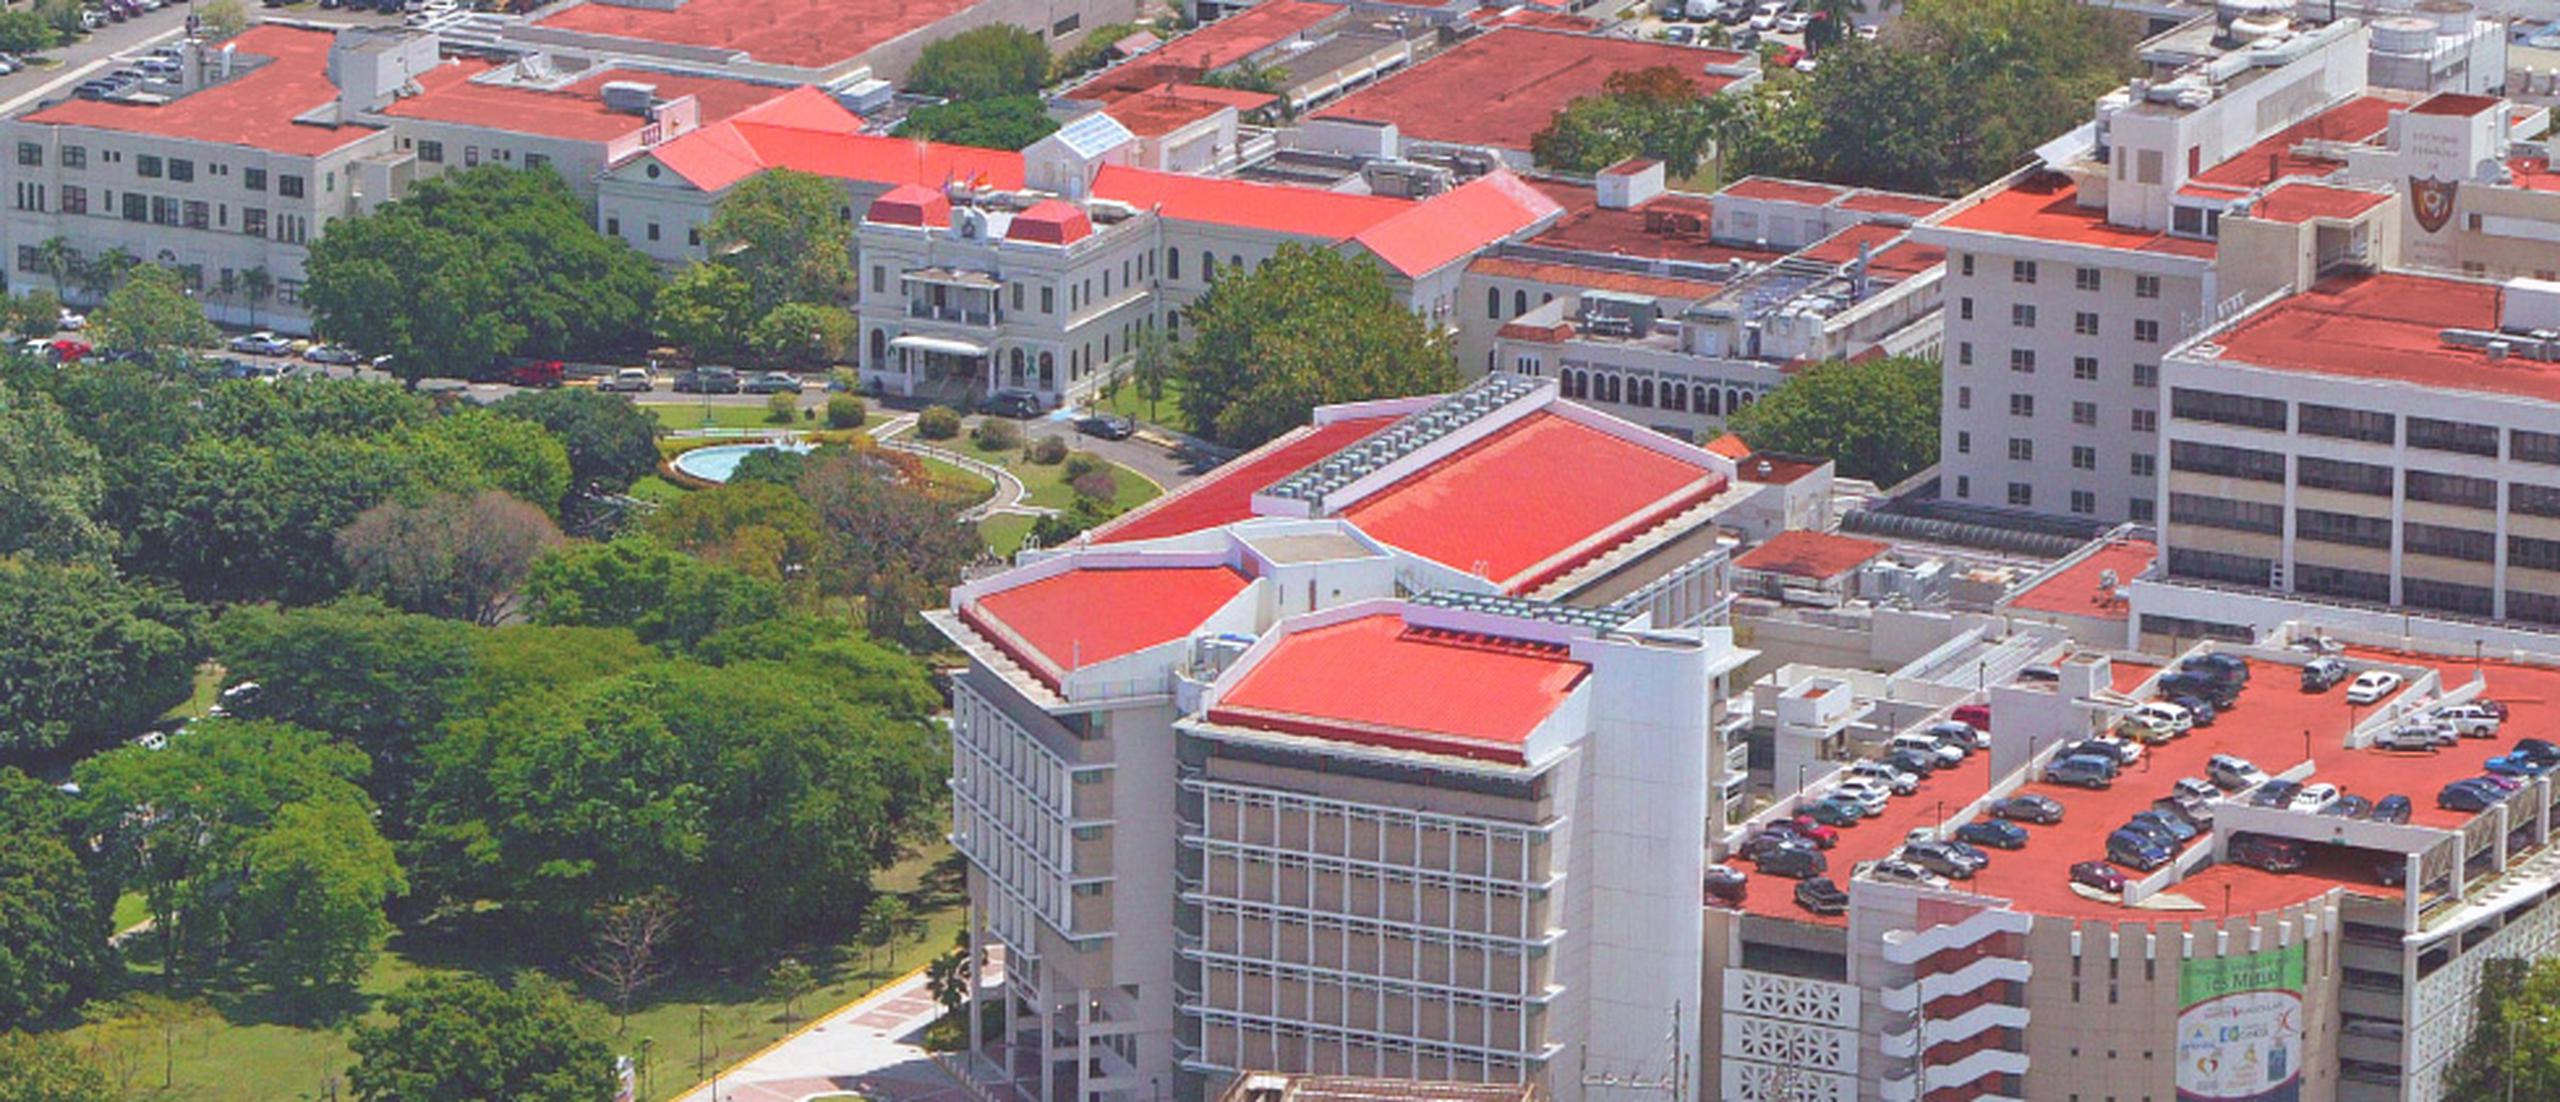 El Hospital Auxilio Mutuo, con más de 138 años de servicio en Puerto Rico, es una institución vanguardista de la salud.